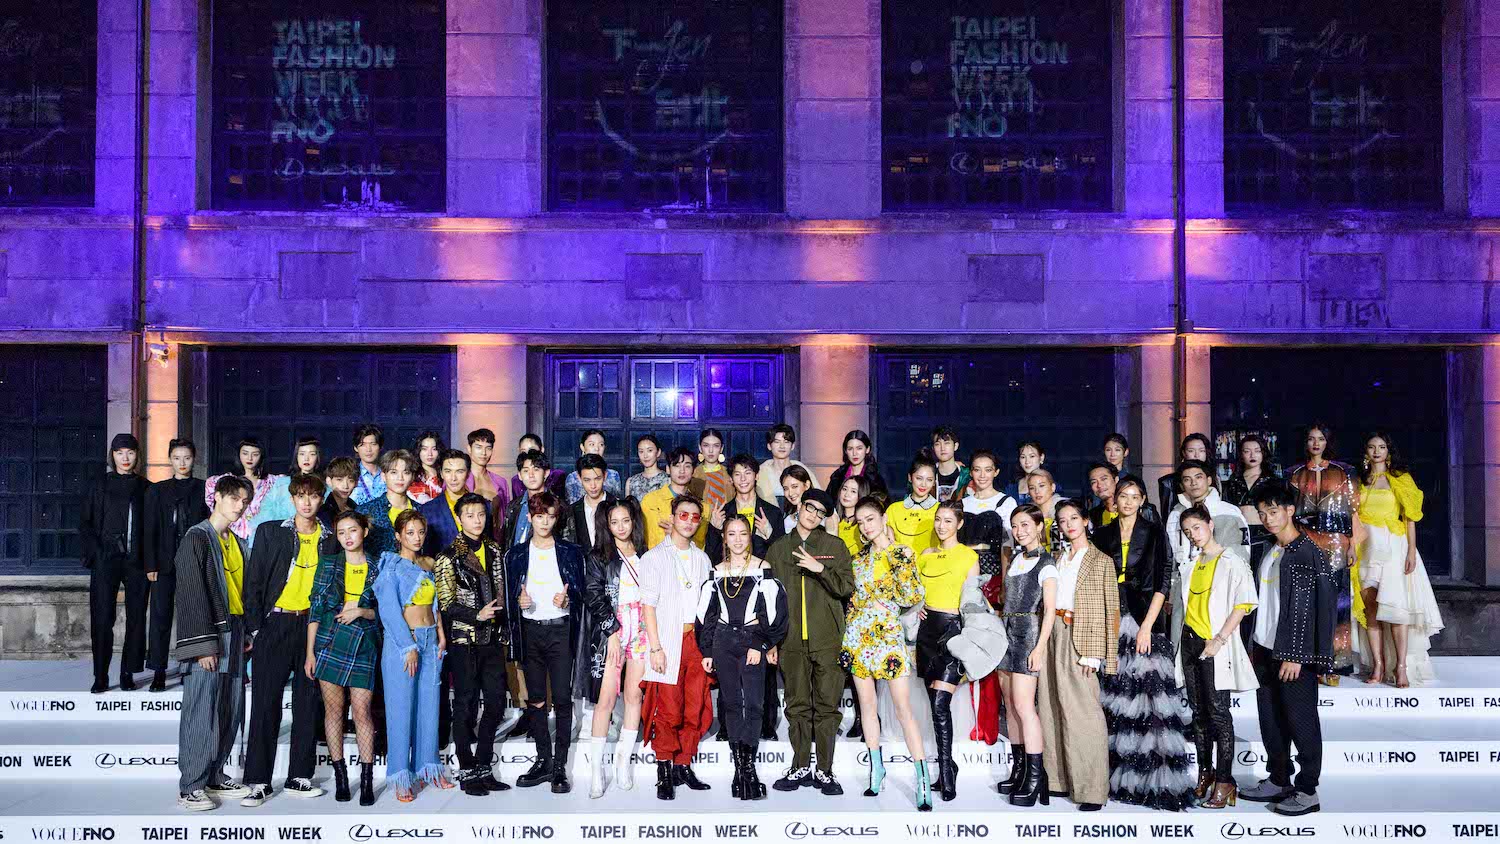 2019 臺北時裝週 X Vogue 全球購物夜出席藝人合影。